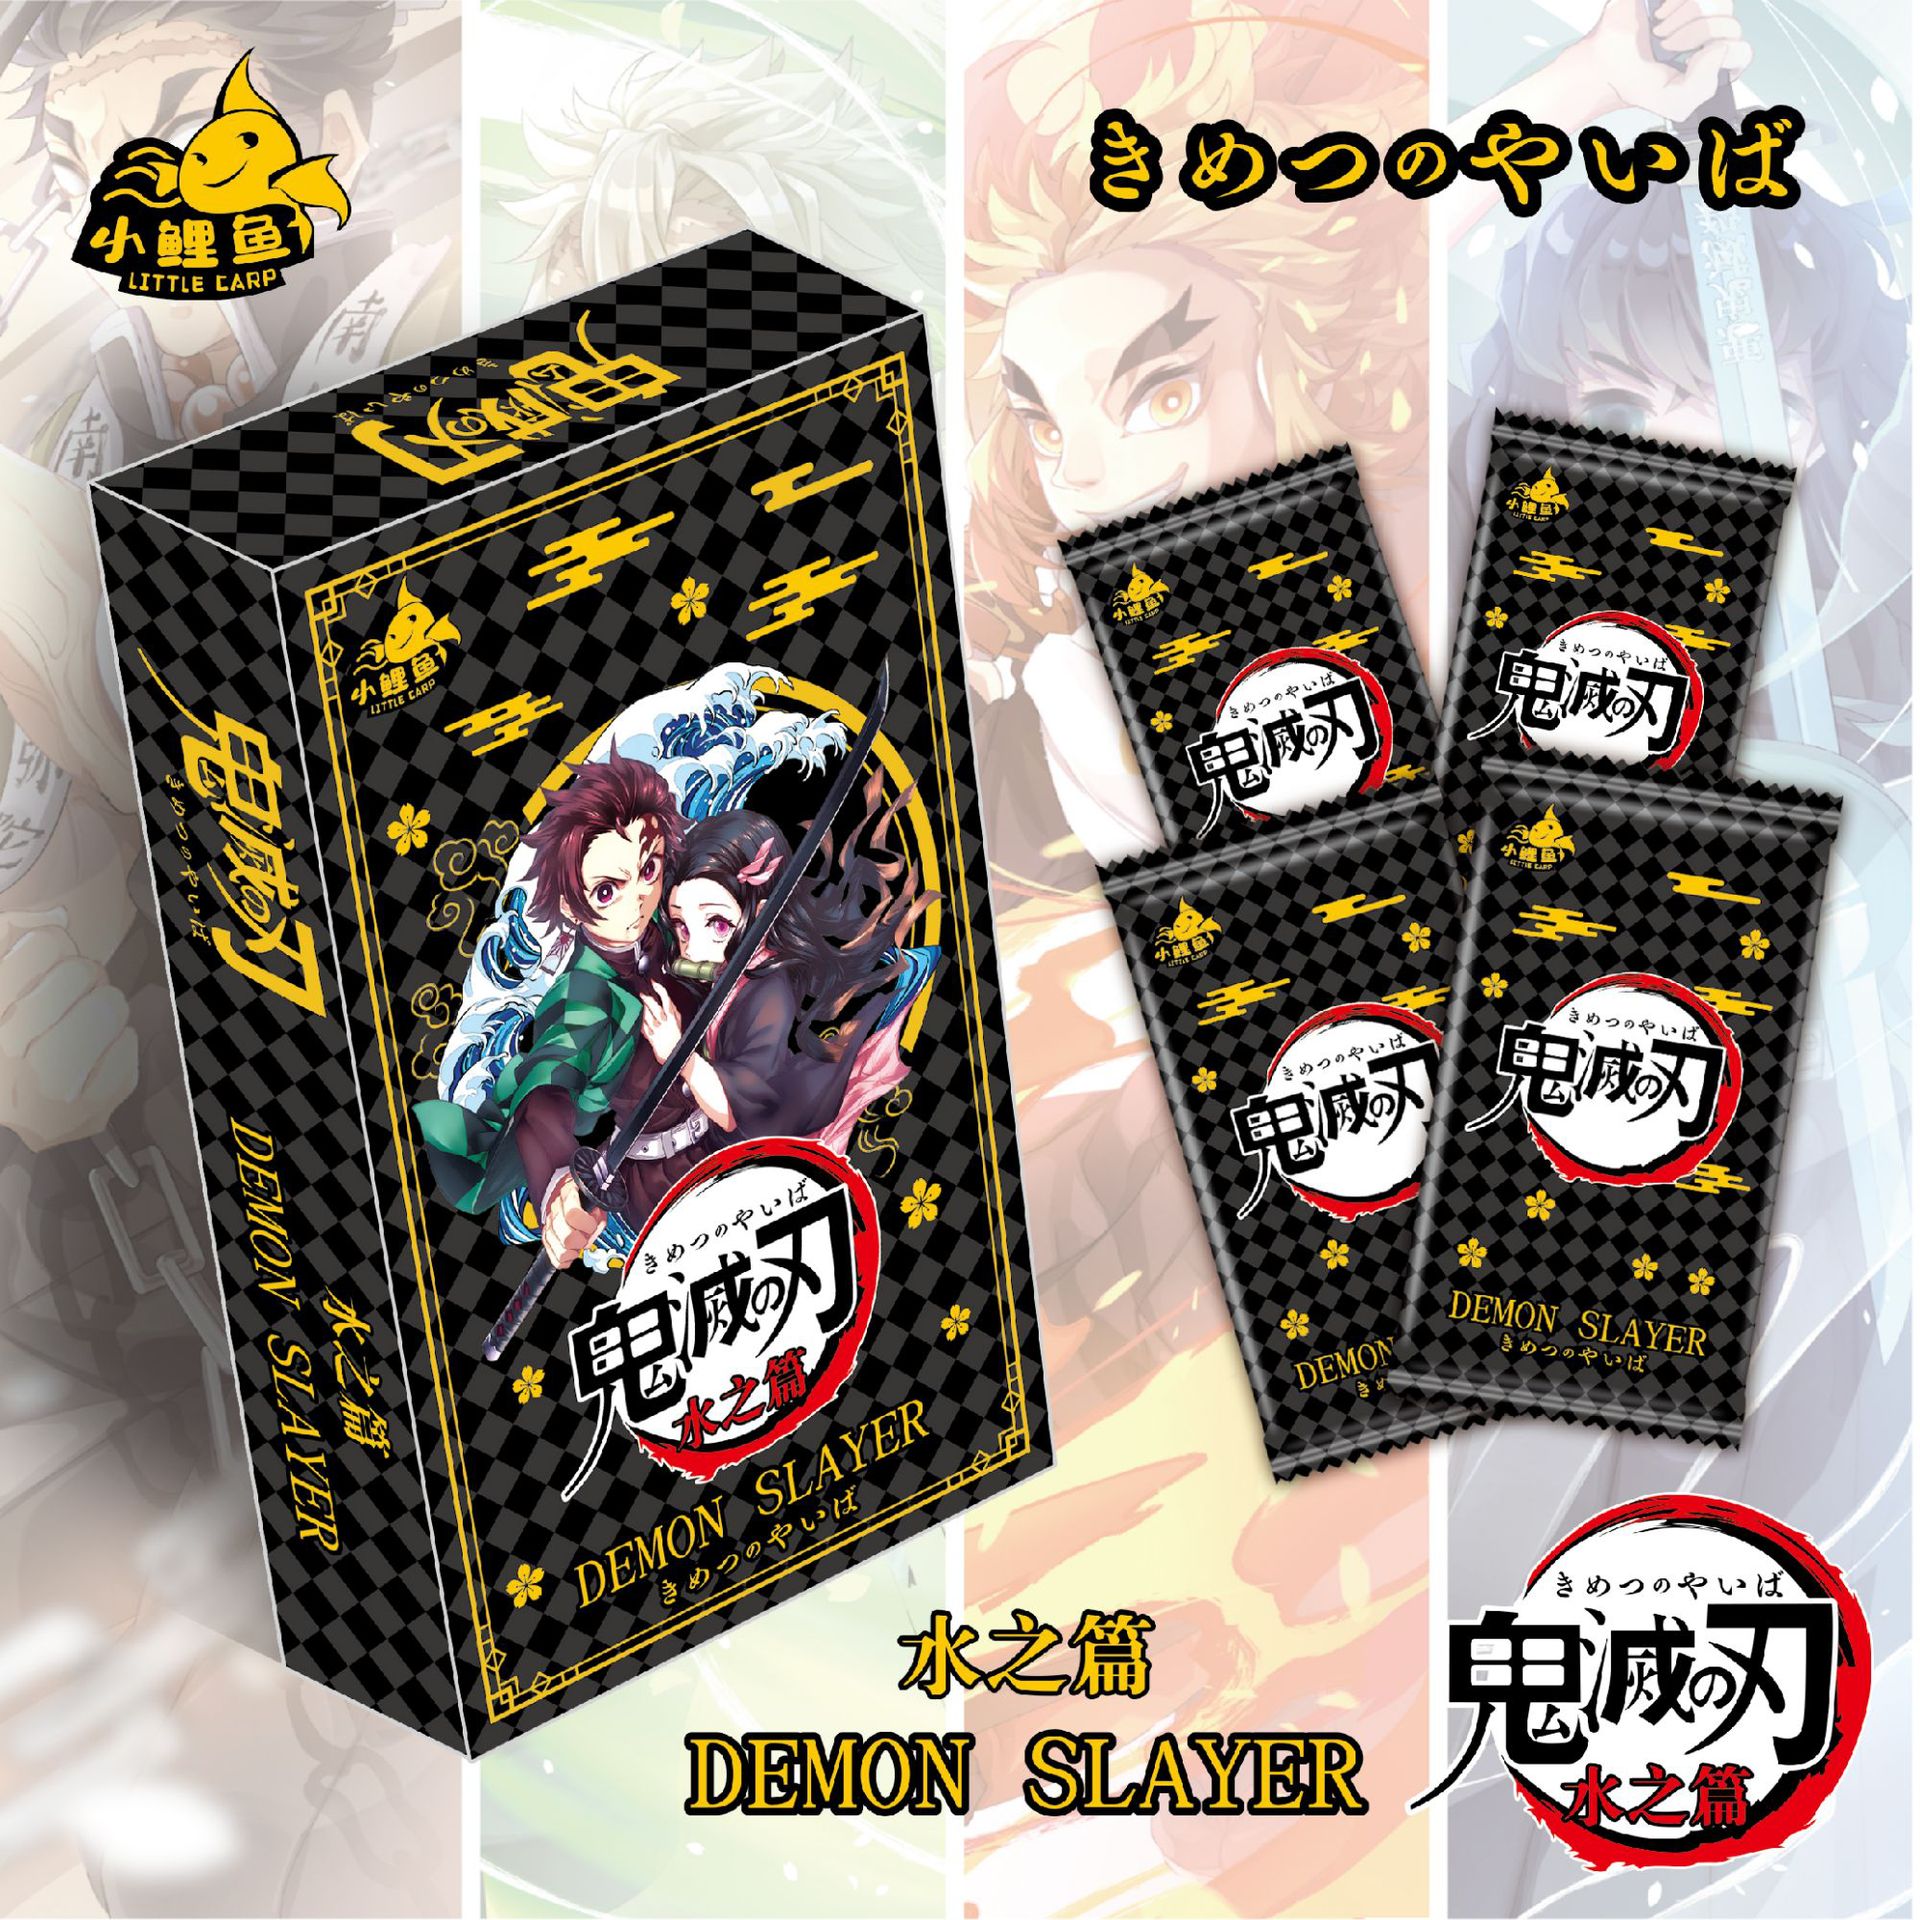 (FULL BOX CAO CẤP) Hộp Thẻ Bài Anime Kimetsu No Yaiba ảnh thẻ nhân phẩm chibi xinh xắn giá rẻ ( hộp 5 pack)